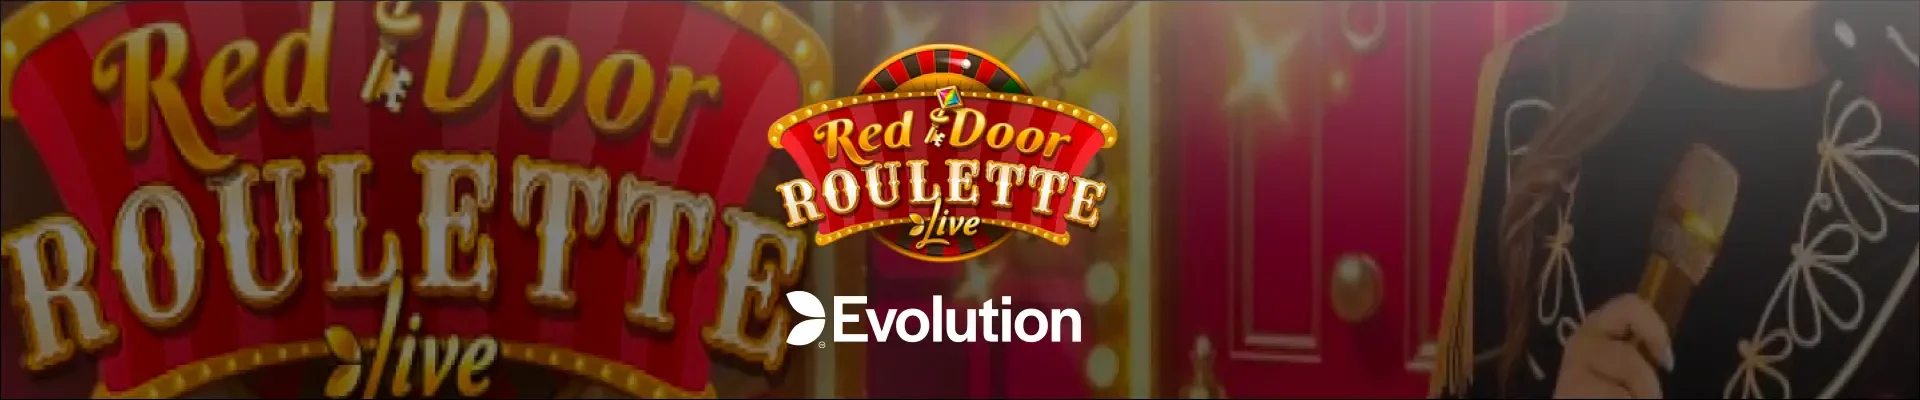 Red Door Roulette header